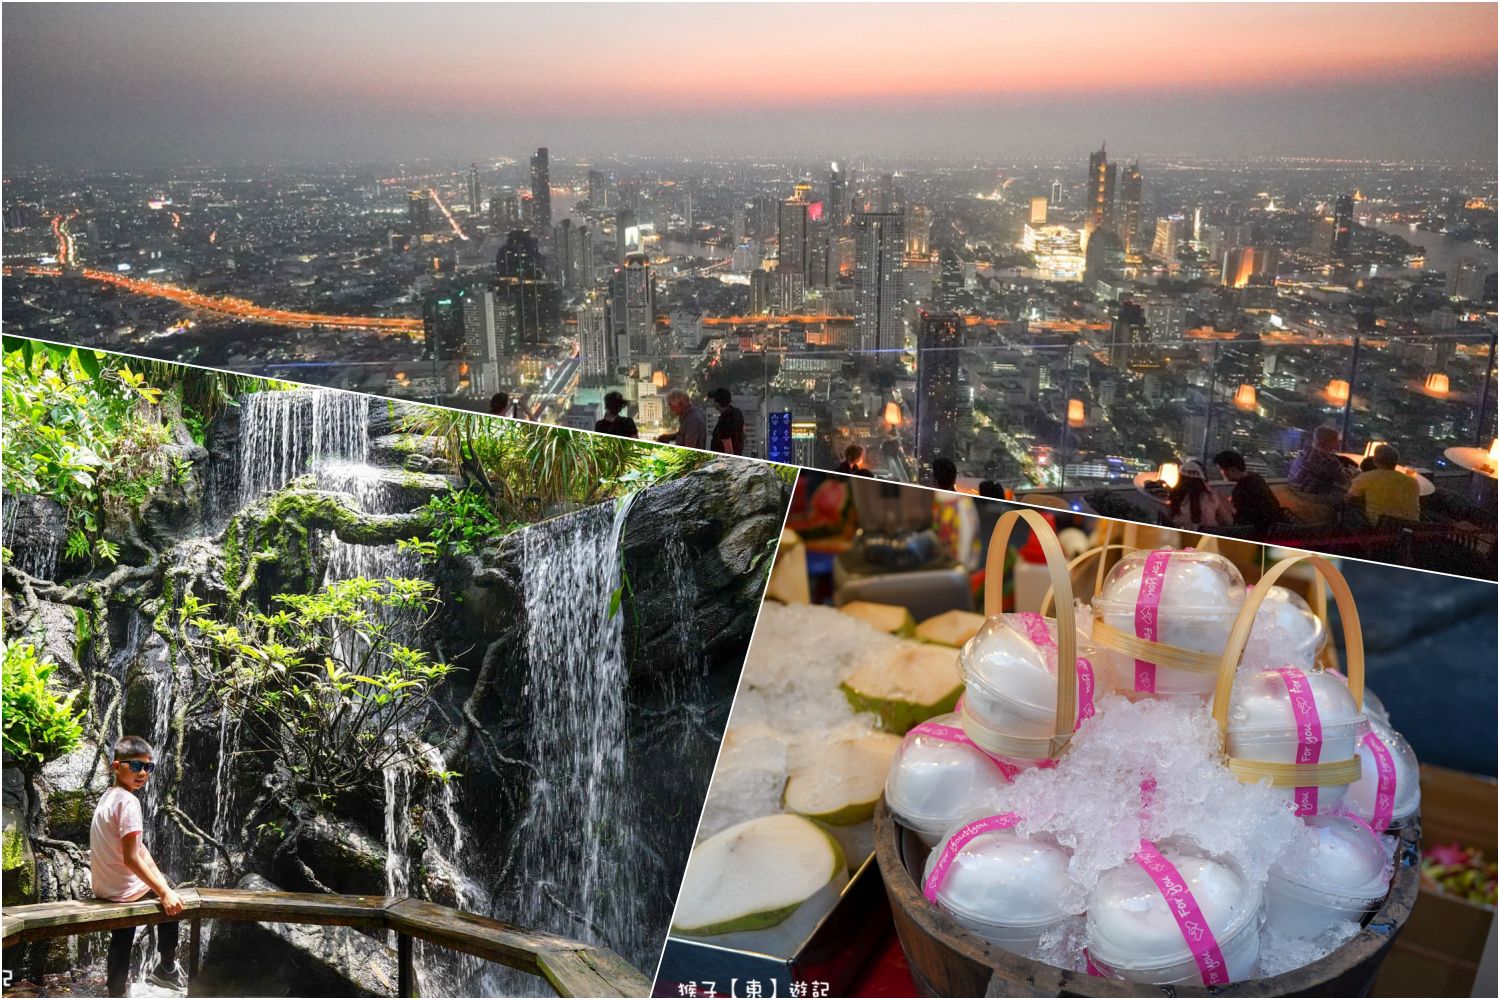 延伸閱讀：[泰國] 空鐵BTS Silom深綠色線精選週邊一日遊 兩日遊景點、餐廳、夜市懶人包 搭BTS玩曼谷市區